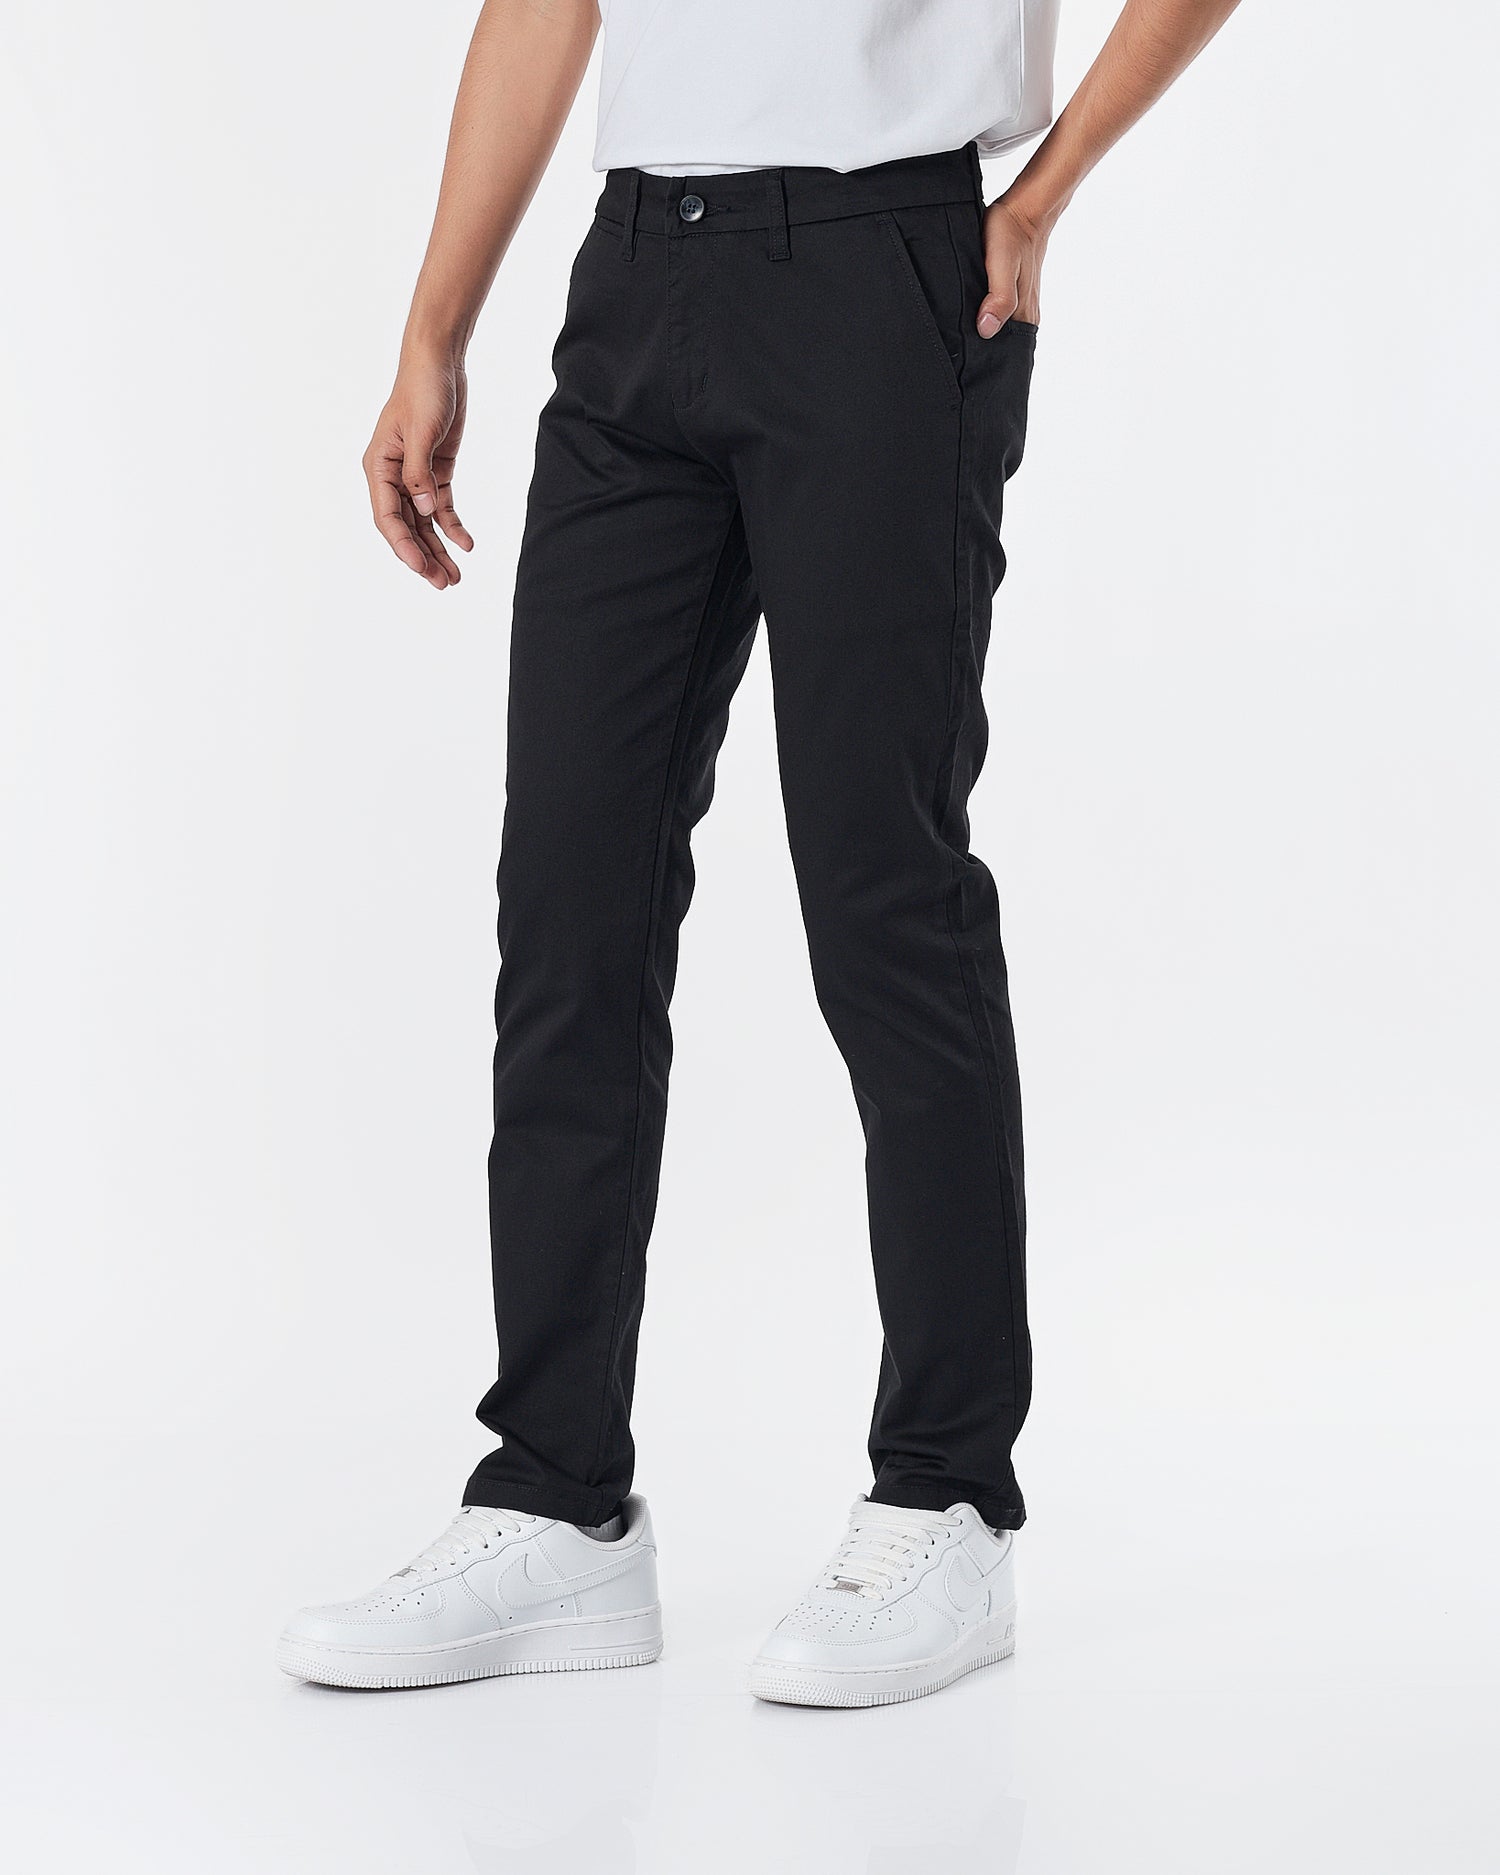 LAC Plain Color Men Black Khaki Pants 22.90